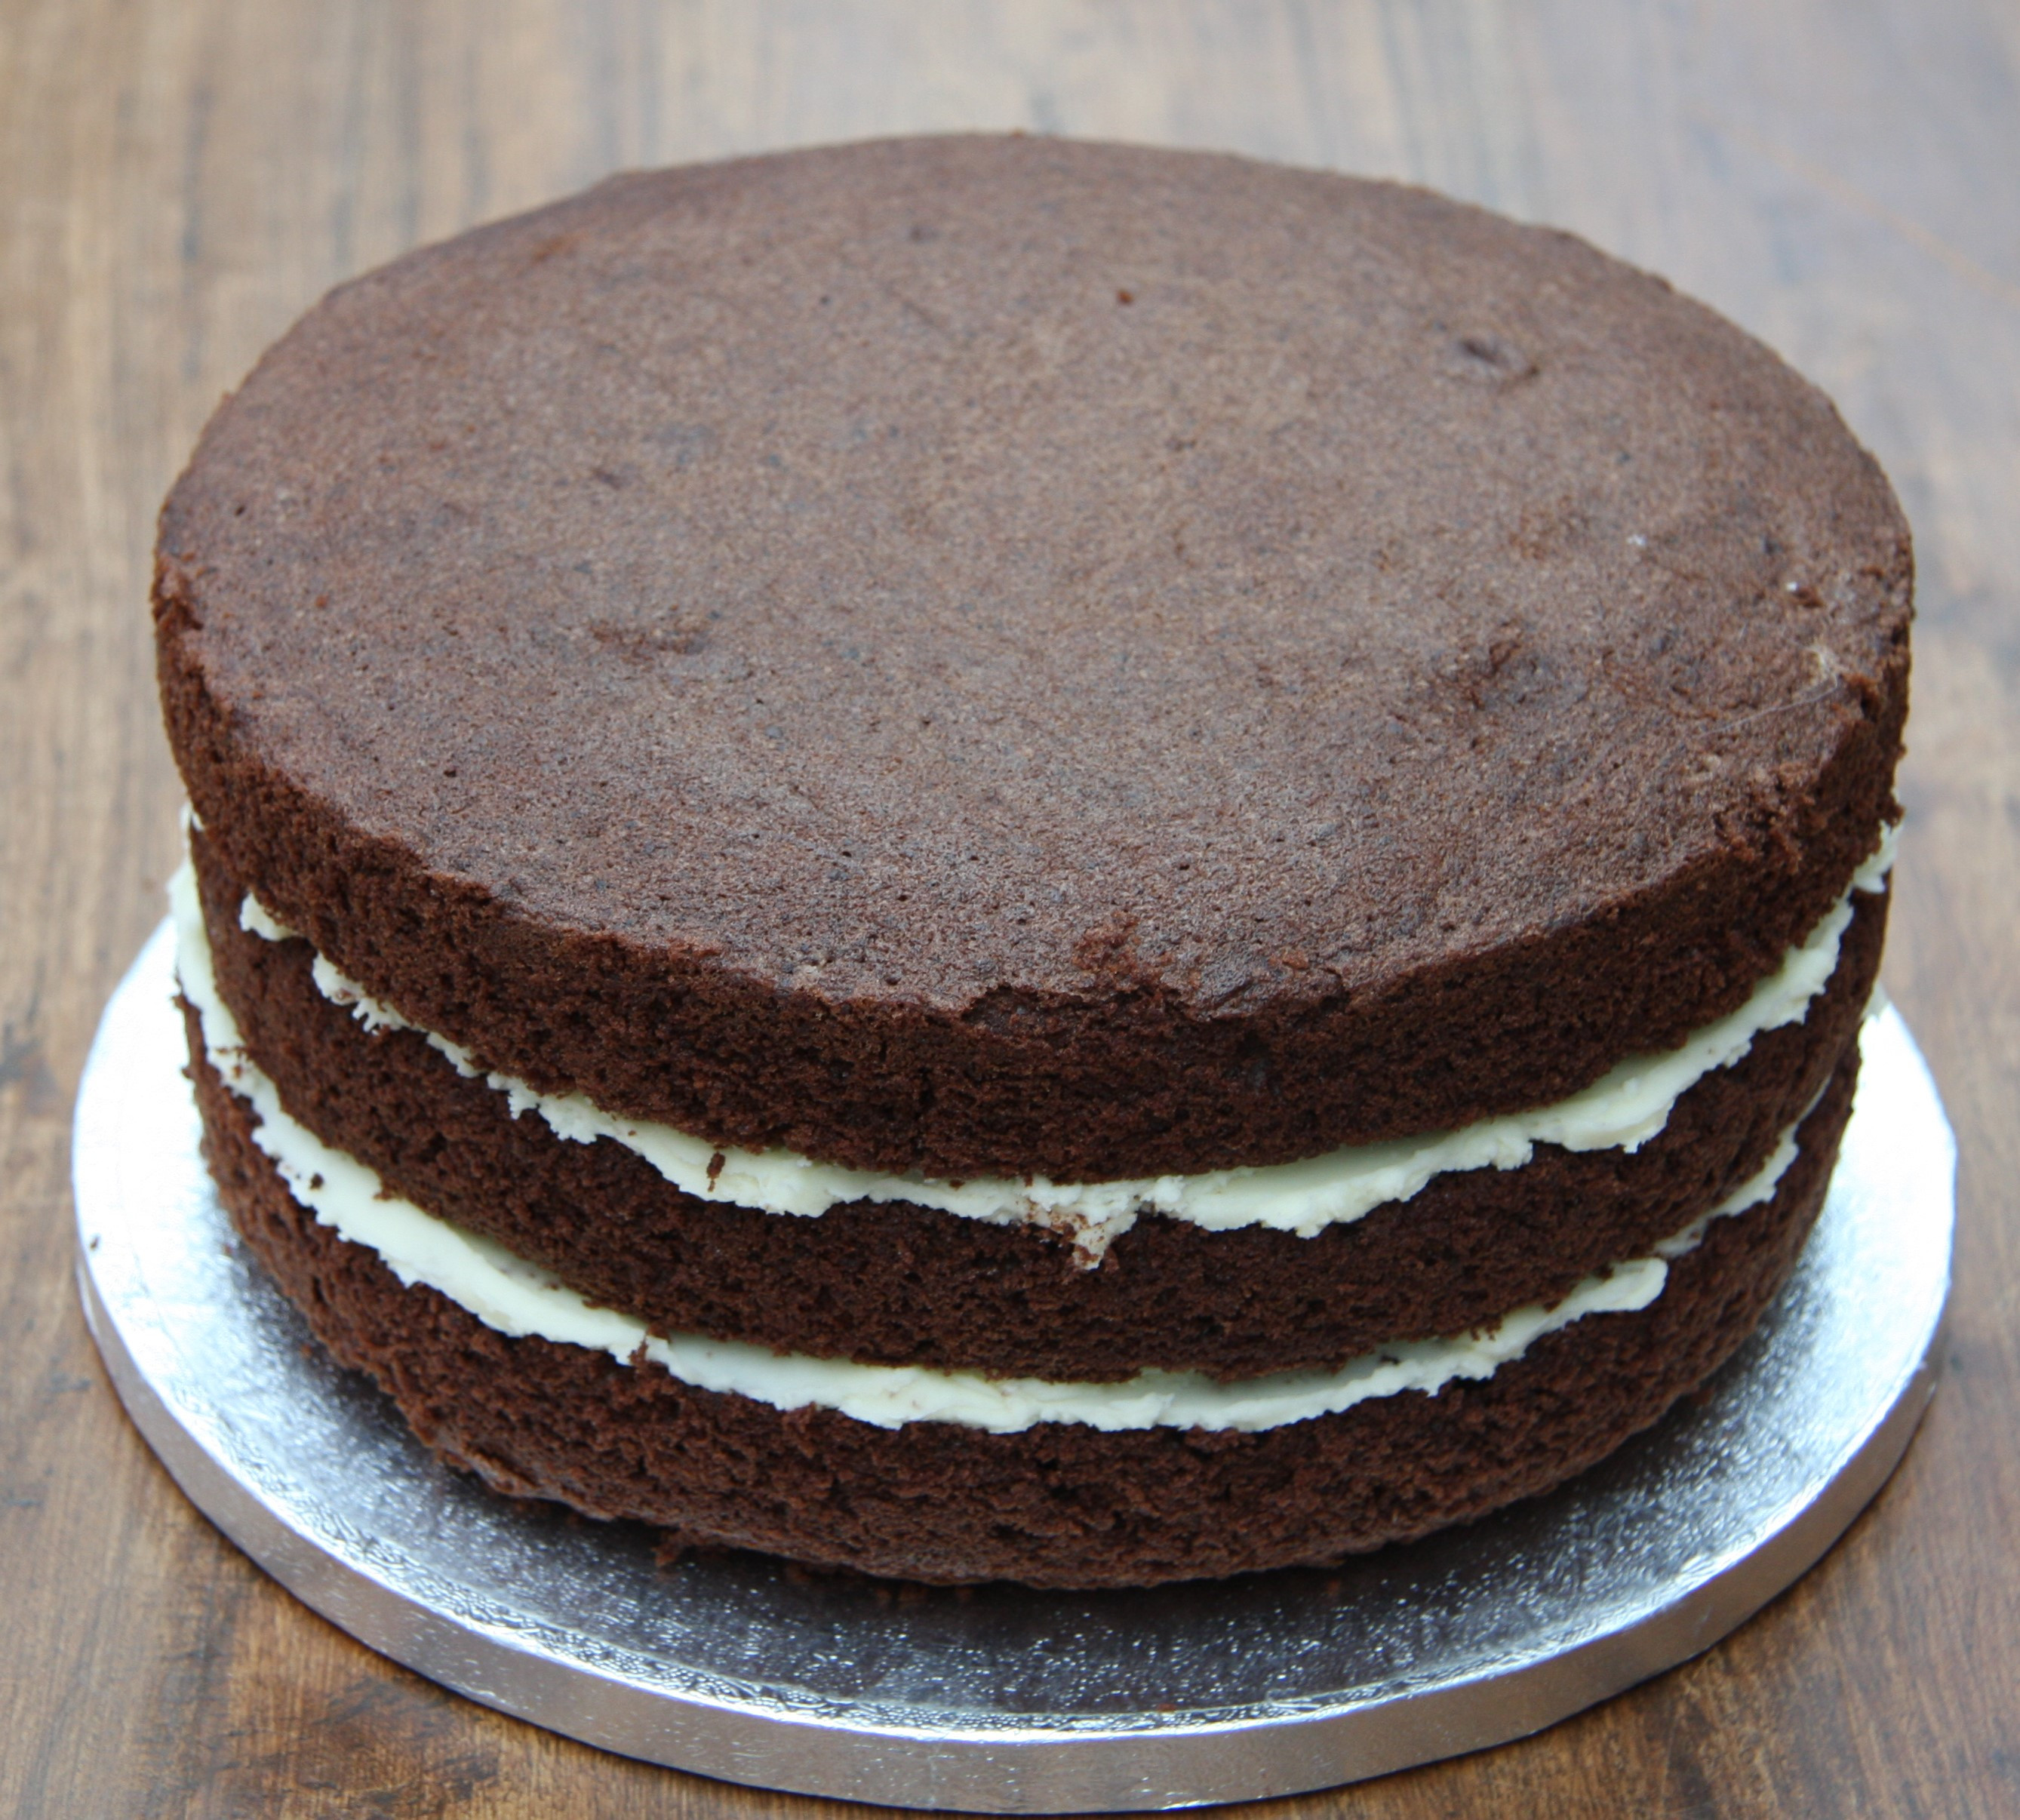 Best ideas about Oreo Birthday Cake
. Save or Pin Chocolate Oreo Birthday Cake – lovinghomemade Now.